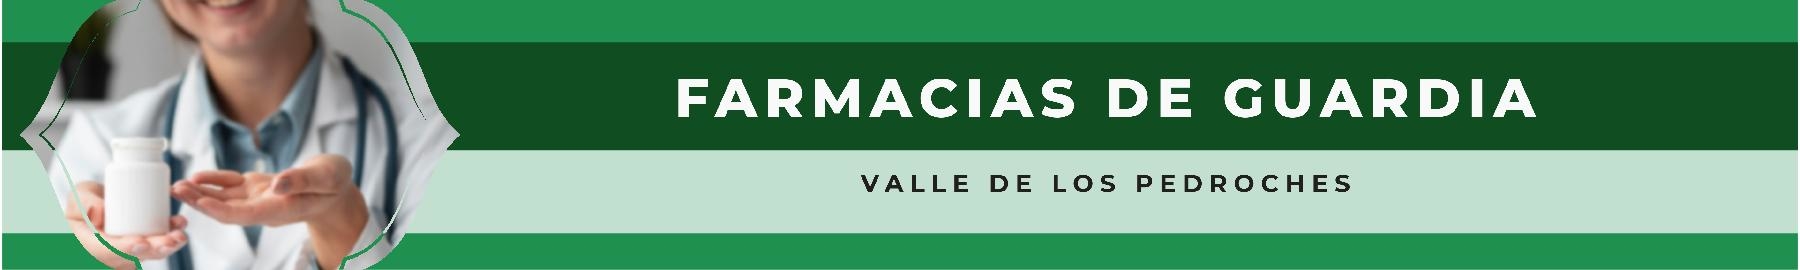 Farmacias de Guardia Valle de los Pedroches